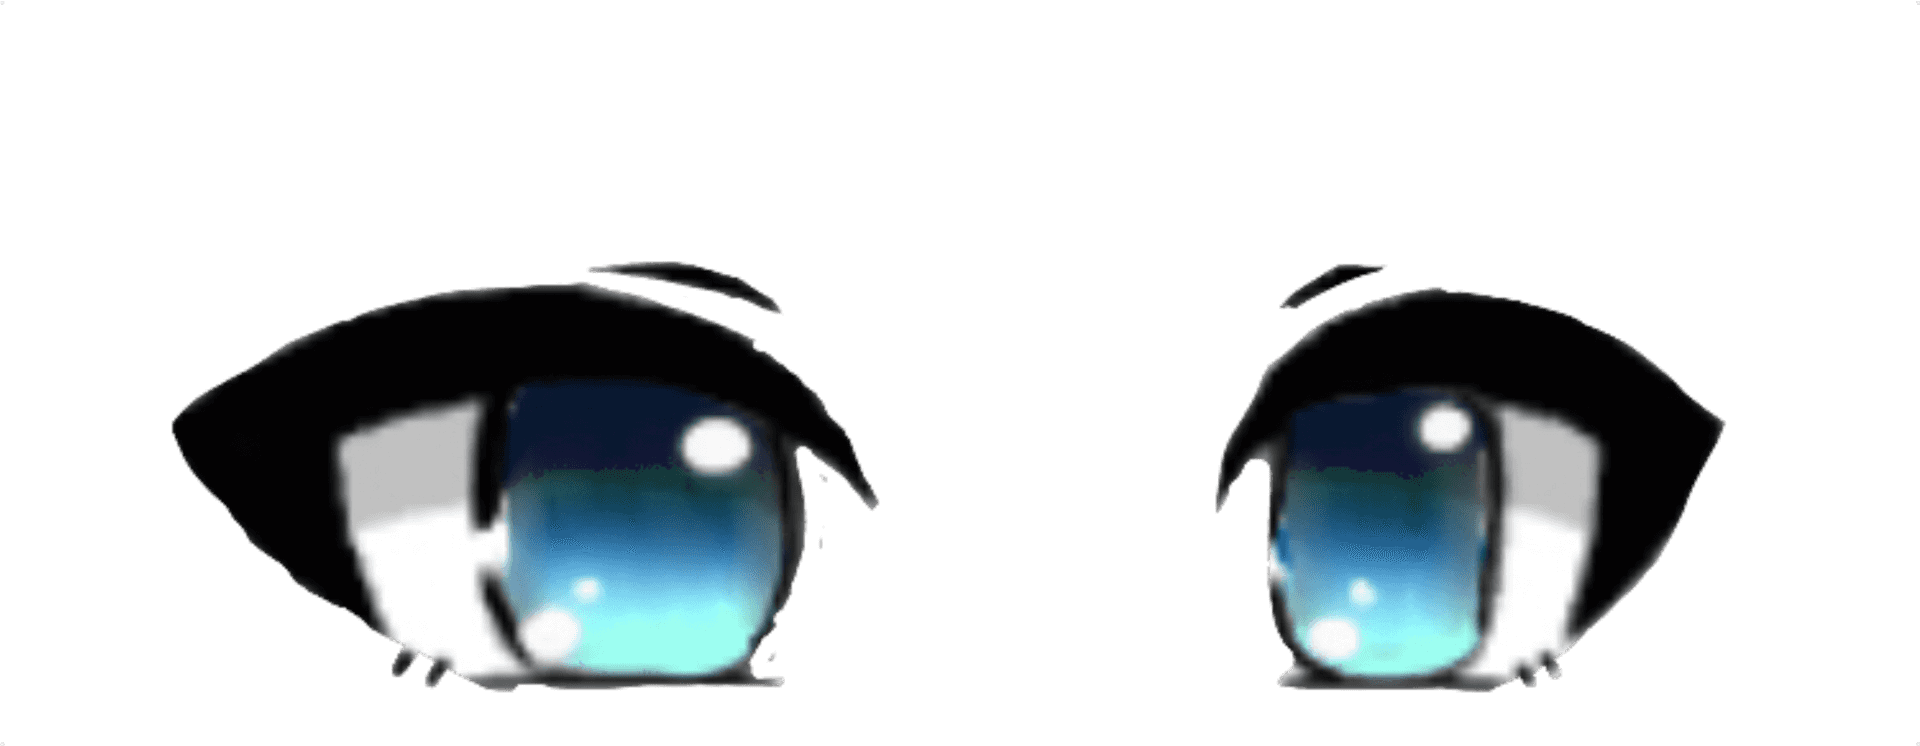 Animated Chibi Eyes Illustration PNG image